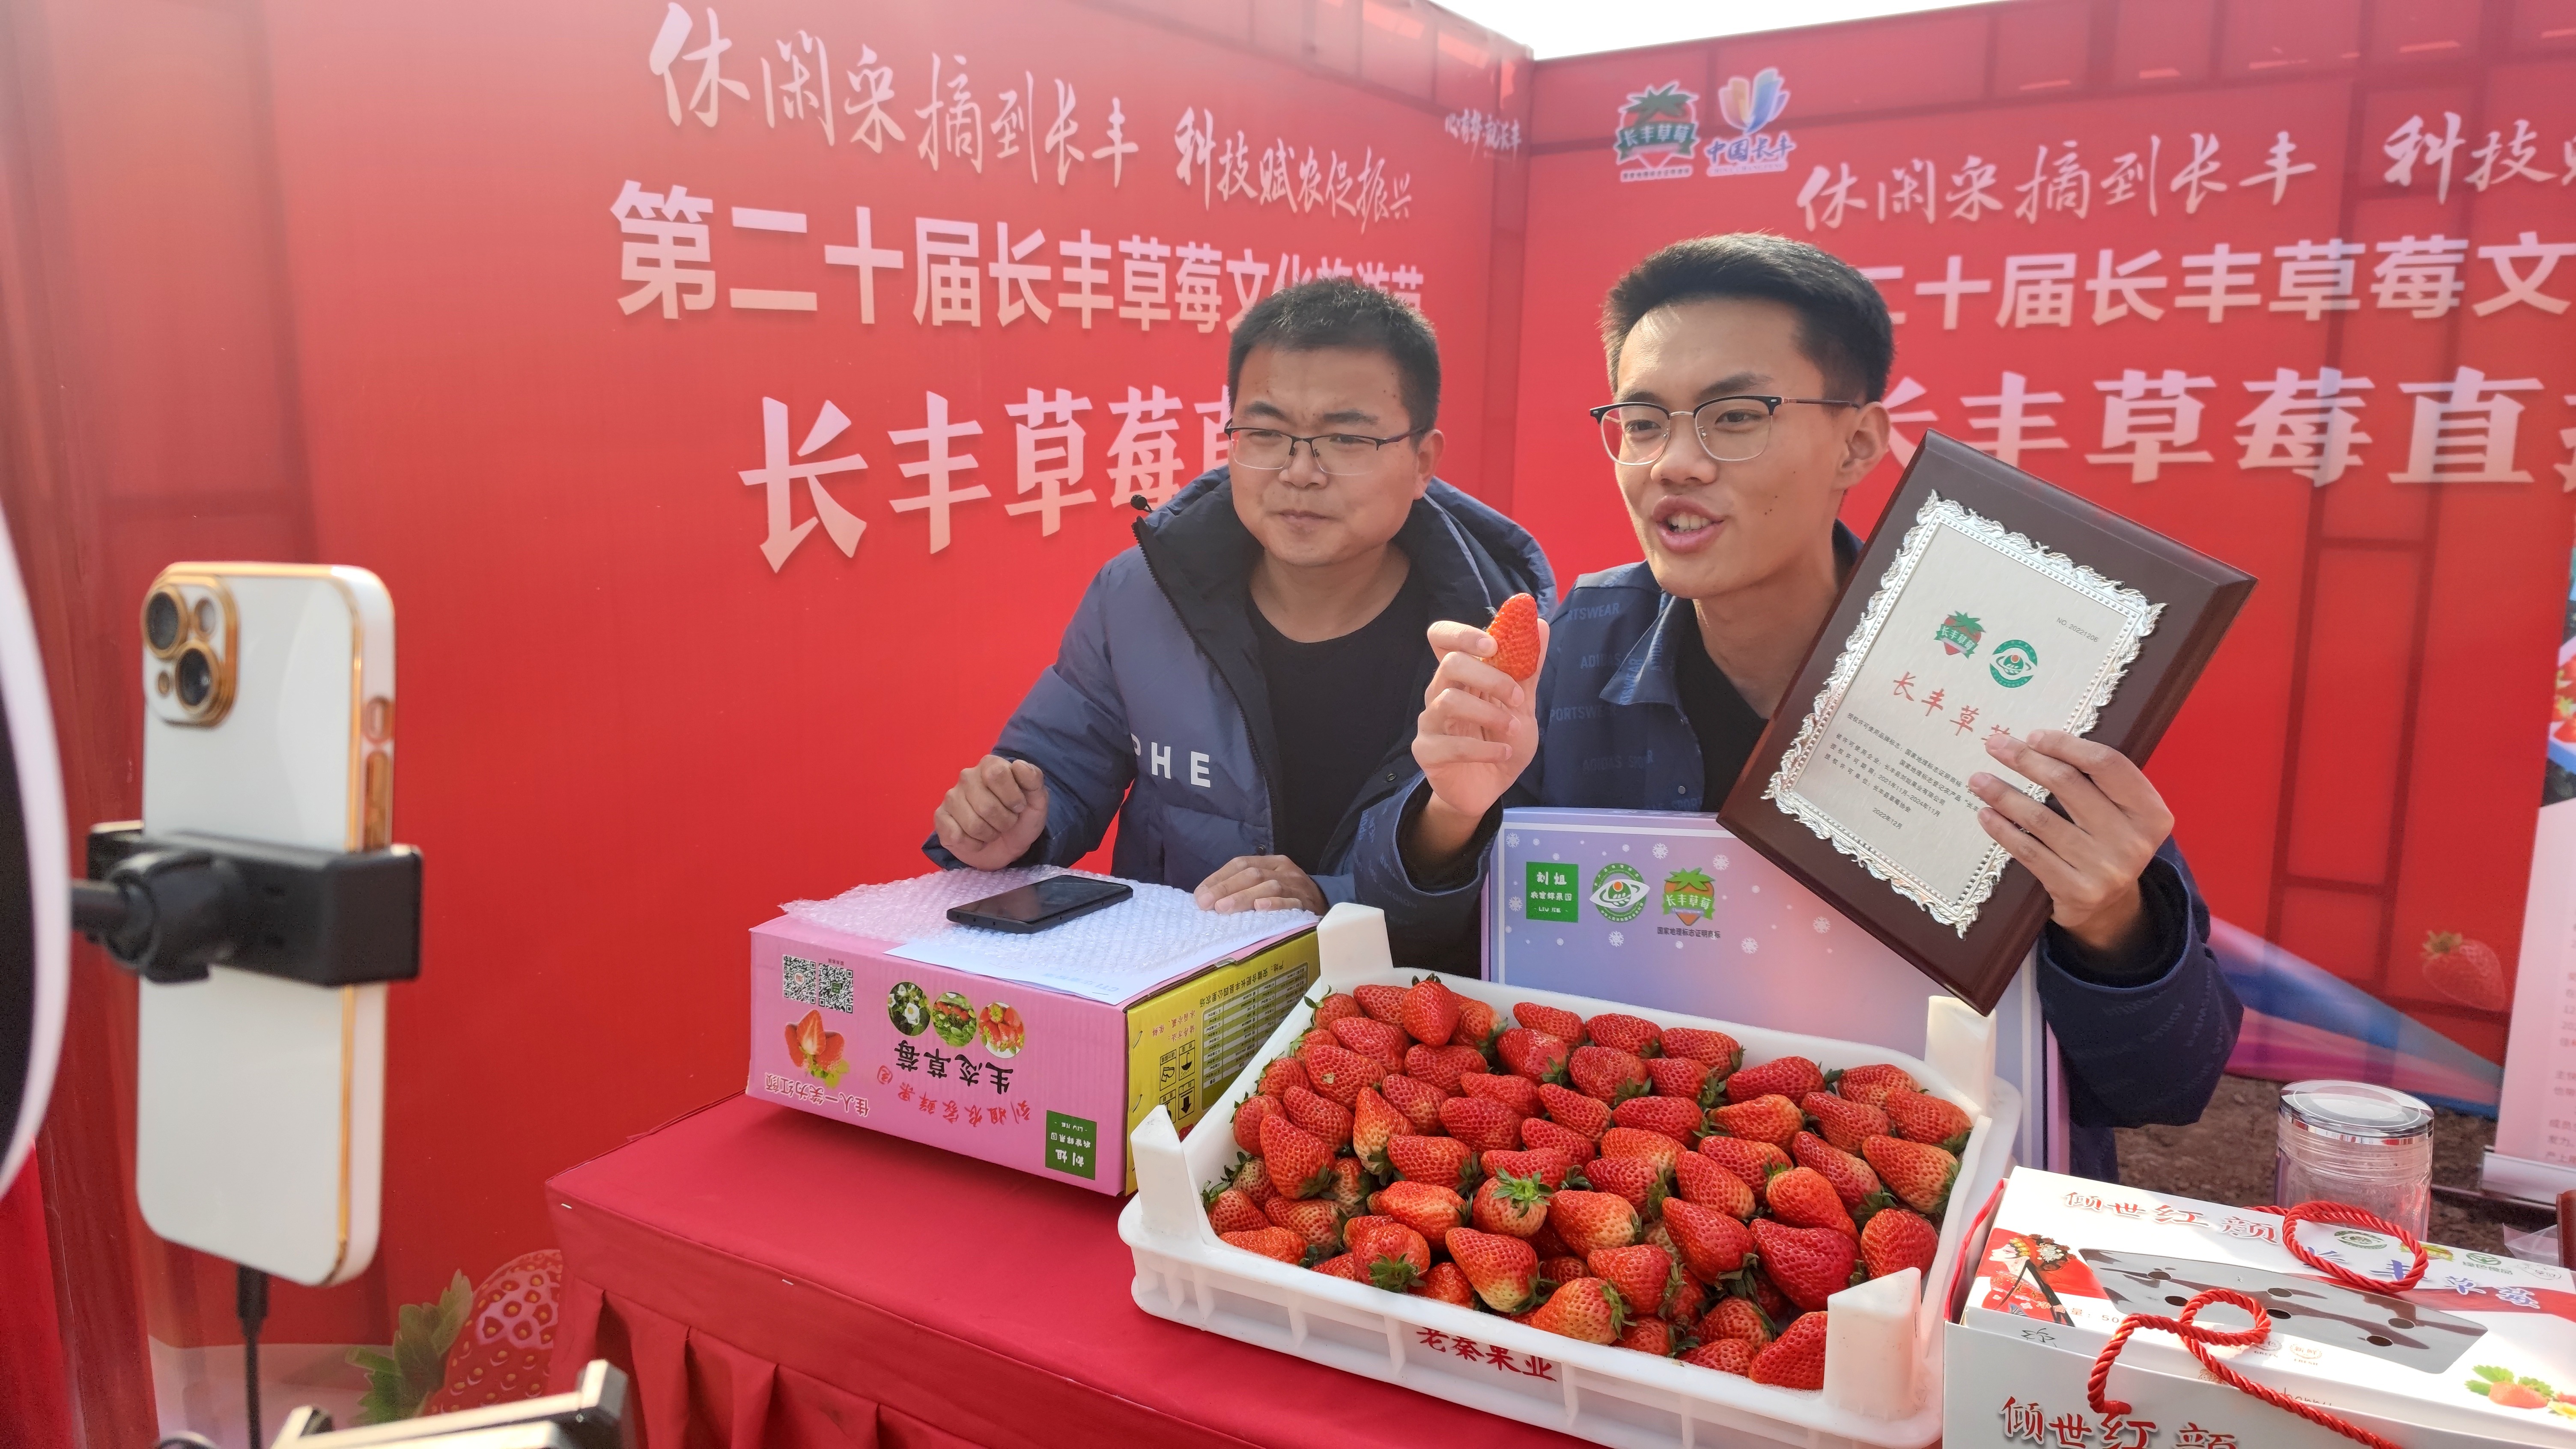 长丰办节卖草莓   “草莓小镇”进军线上市场